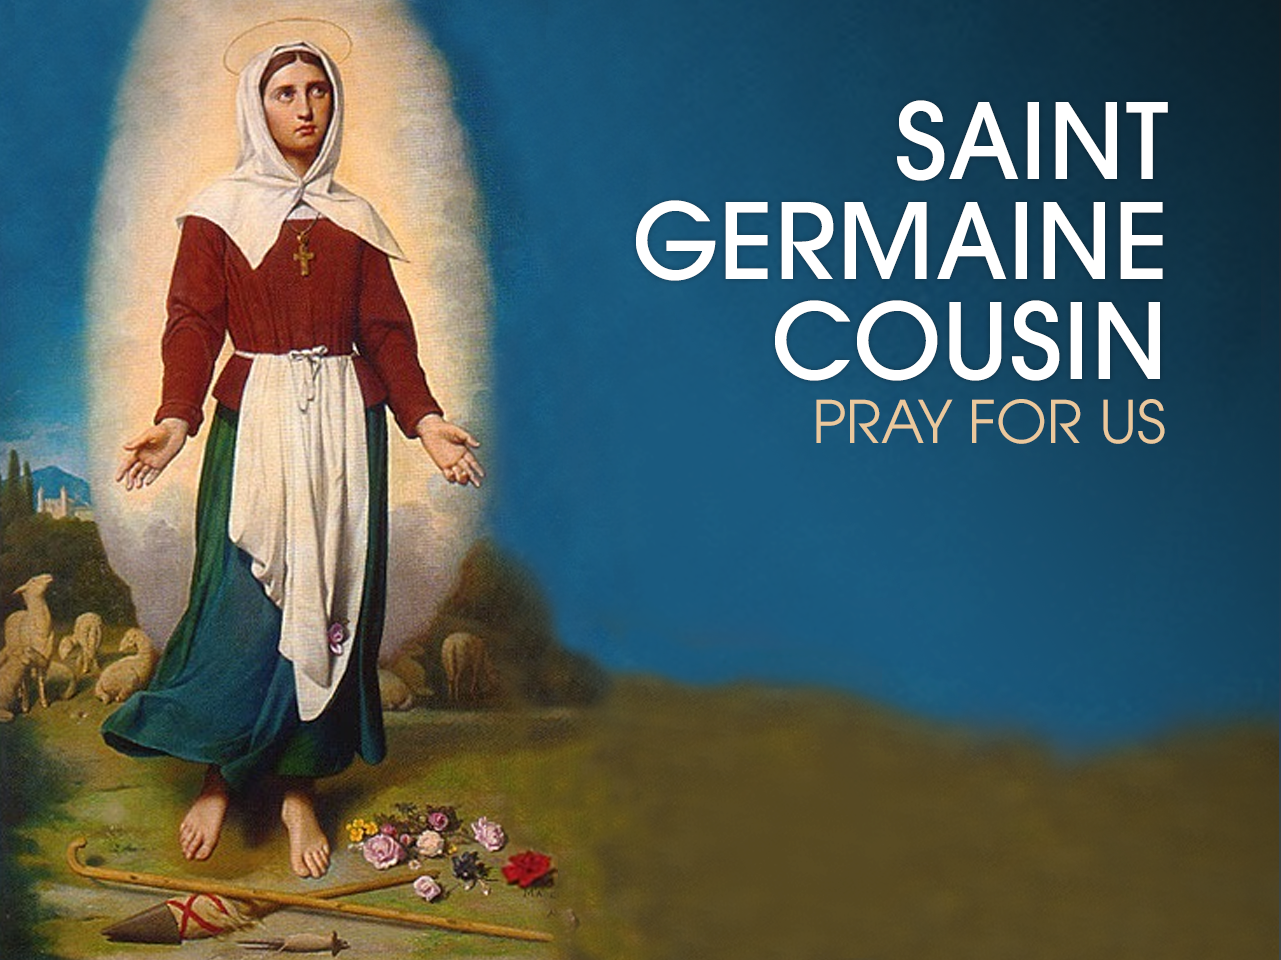 St. Germaine Cousin